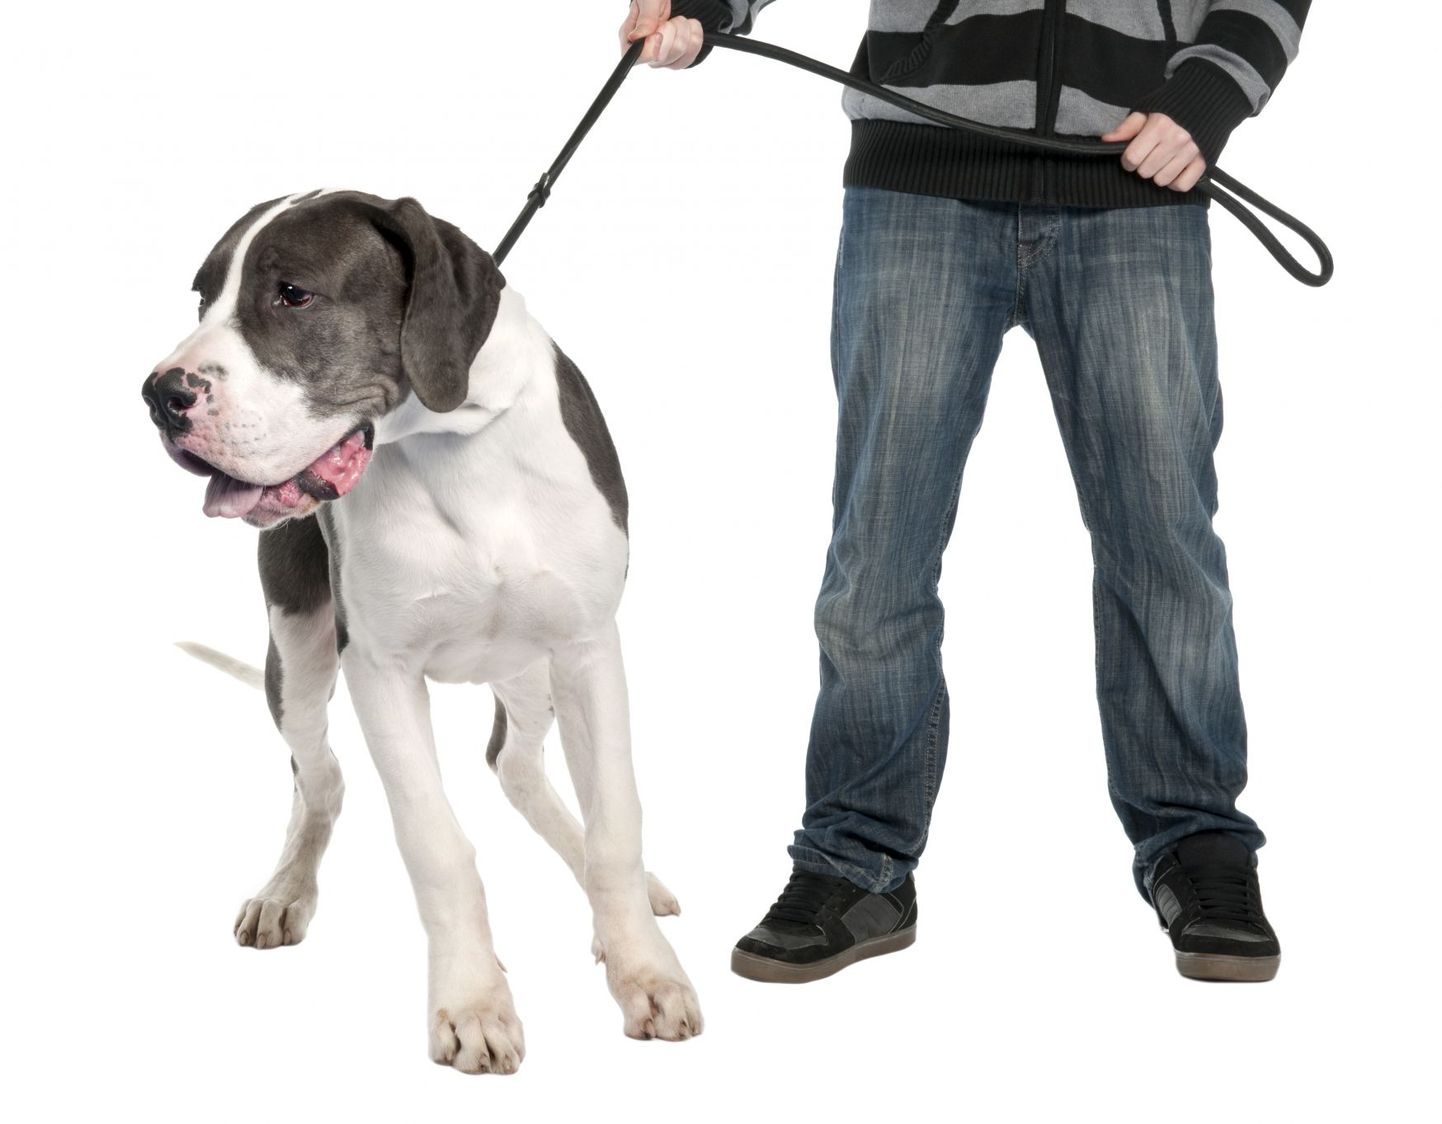 Tööandjad on näinud ka seda, kui mõni inimene tuleb oma koeraga tööintervjuule. Pilt on illustratiivne.